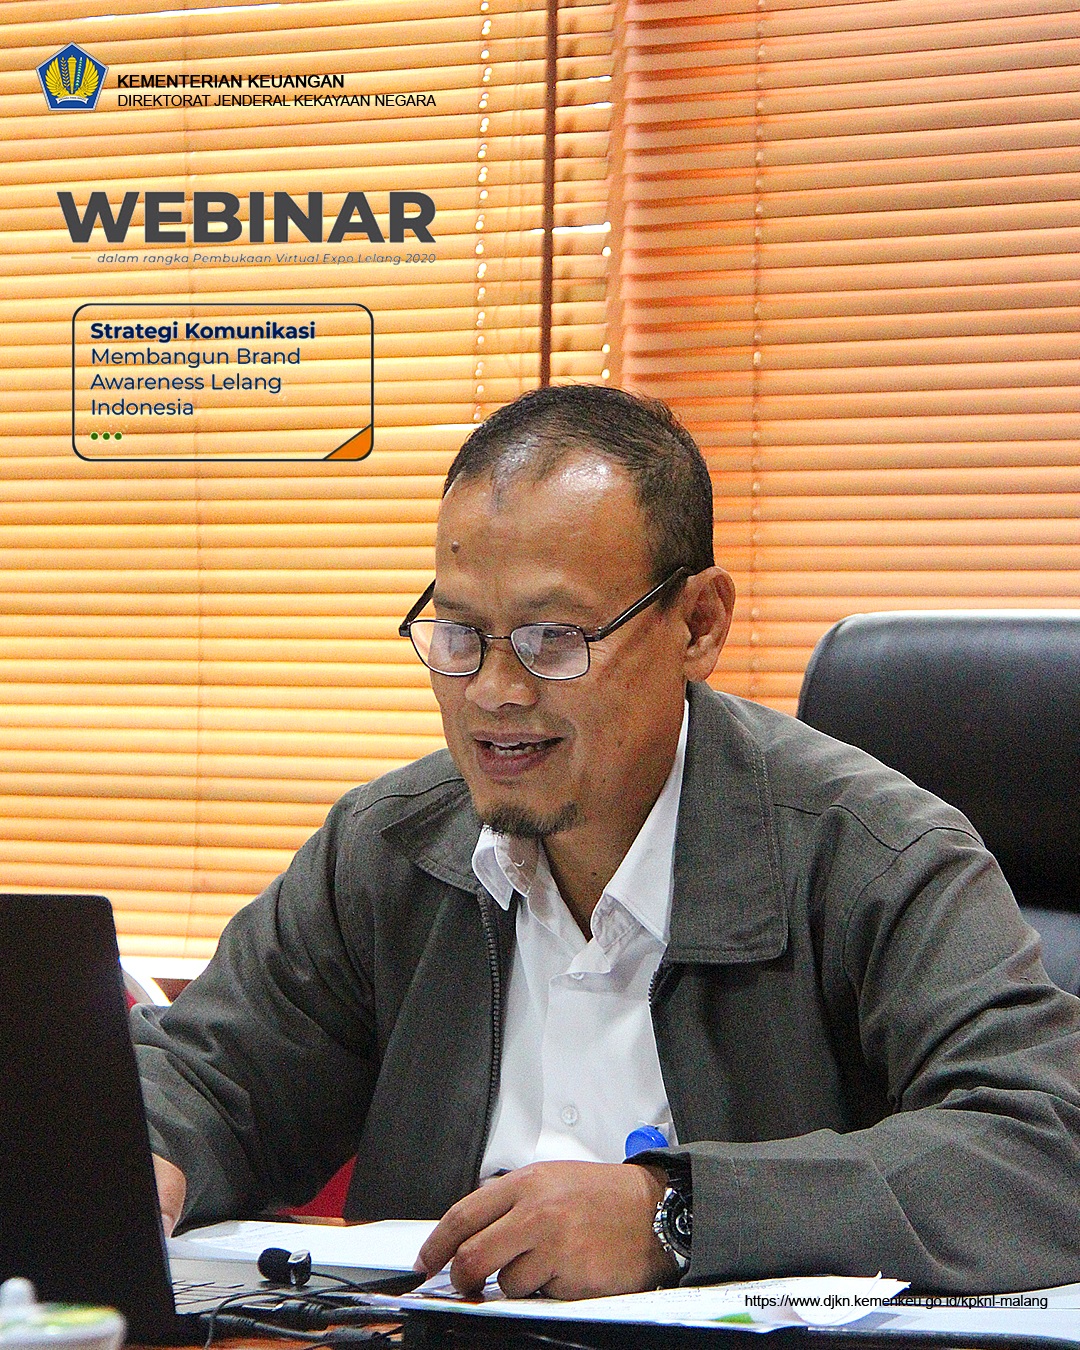 Webinar "Strategi Komunikasi Membangun Brand Awareness Lelang Indonesia"